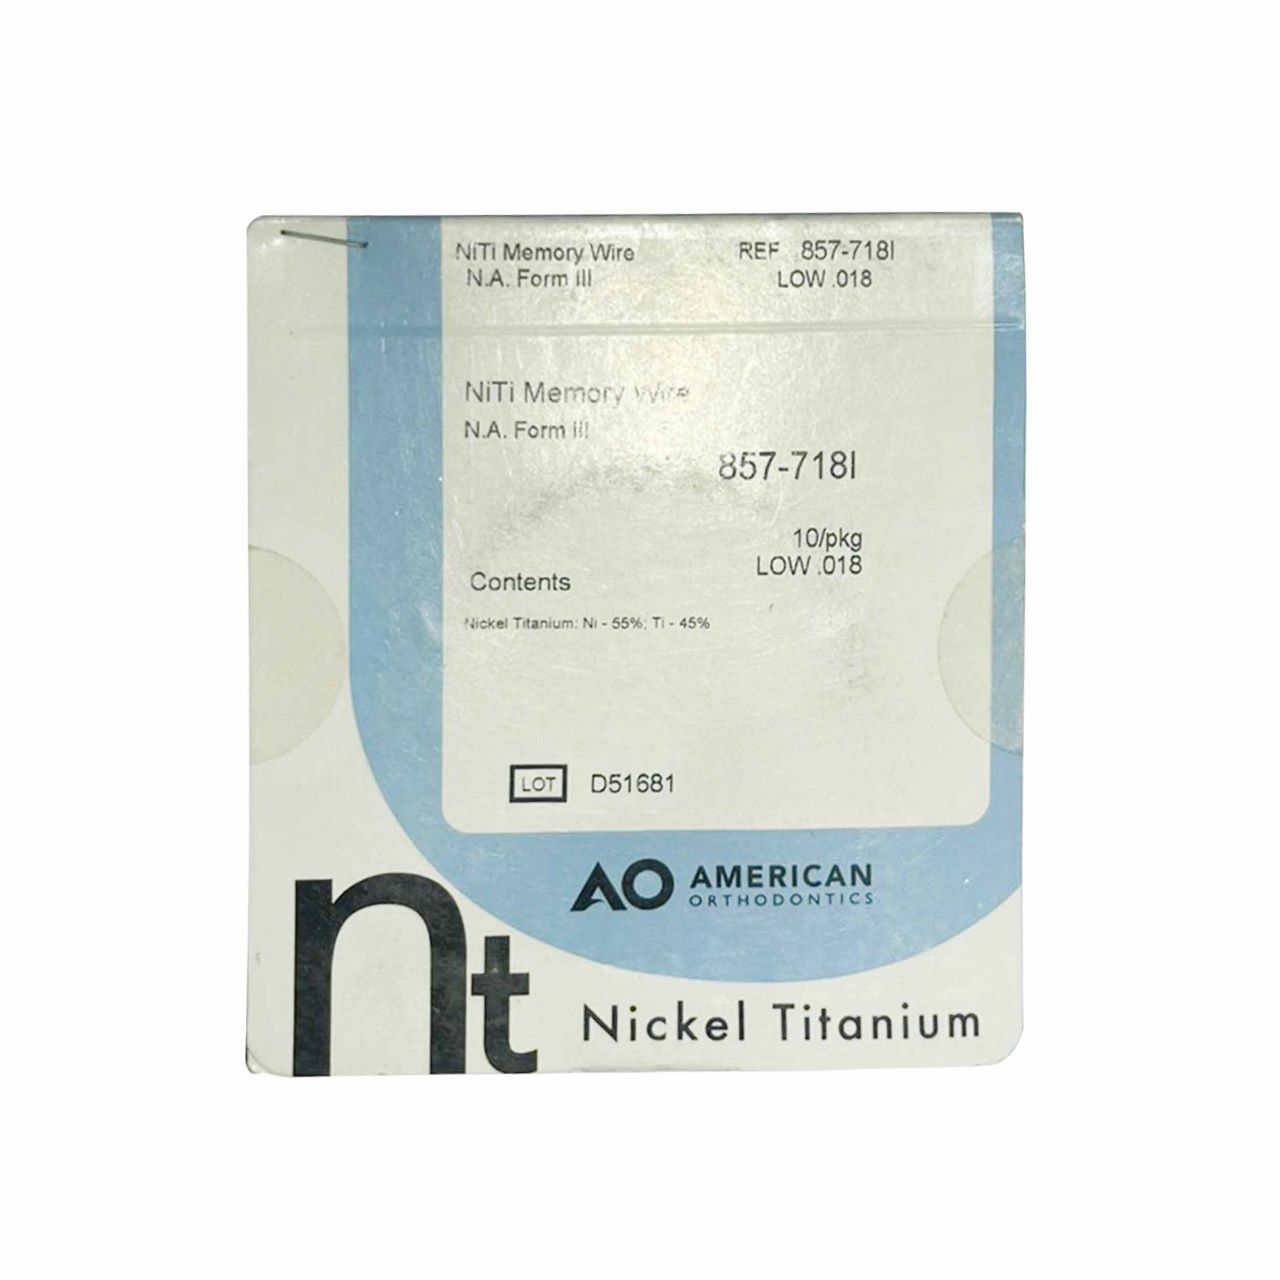 AO American Orthodontics Nickle Titanium Low .020 10/pkg